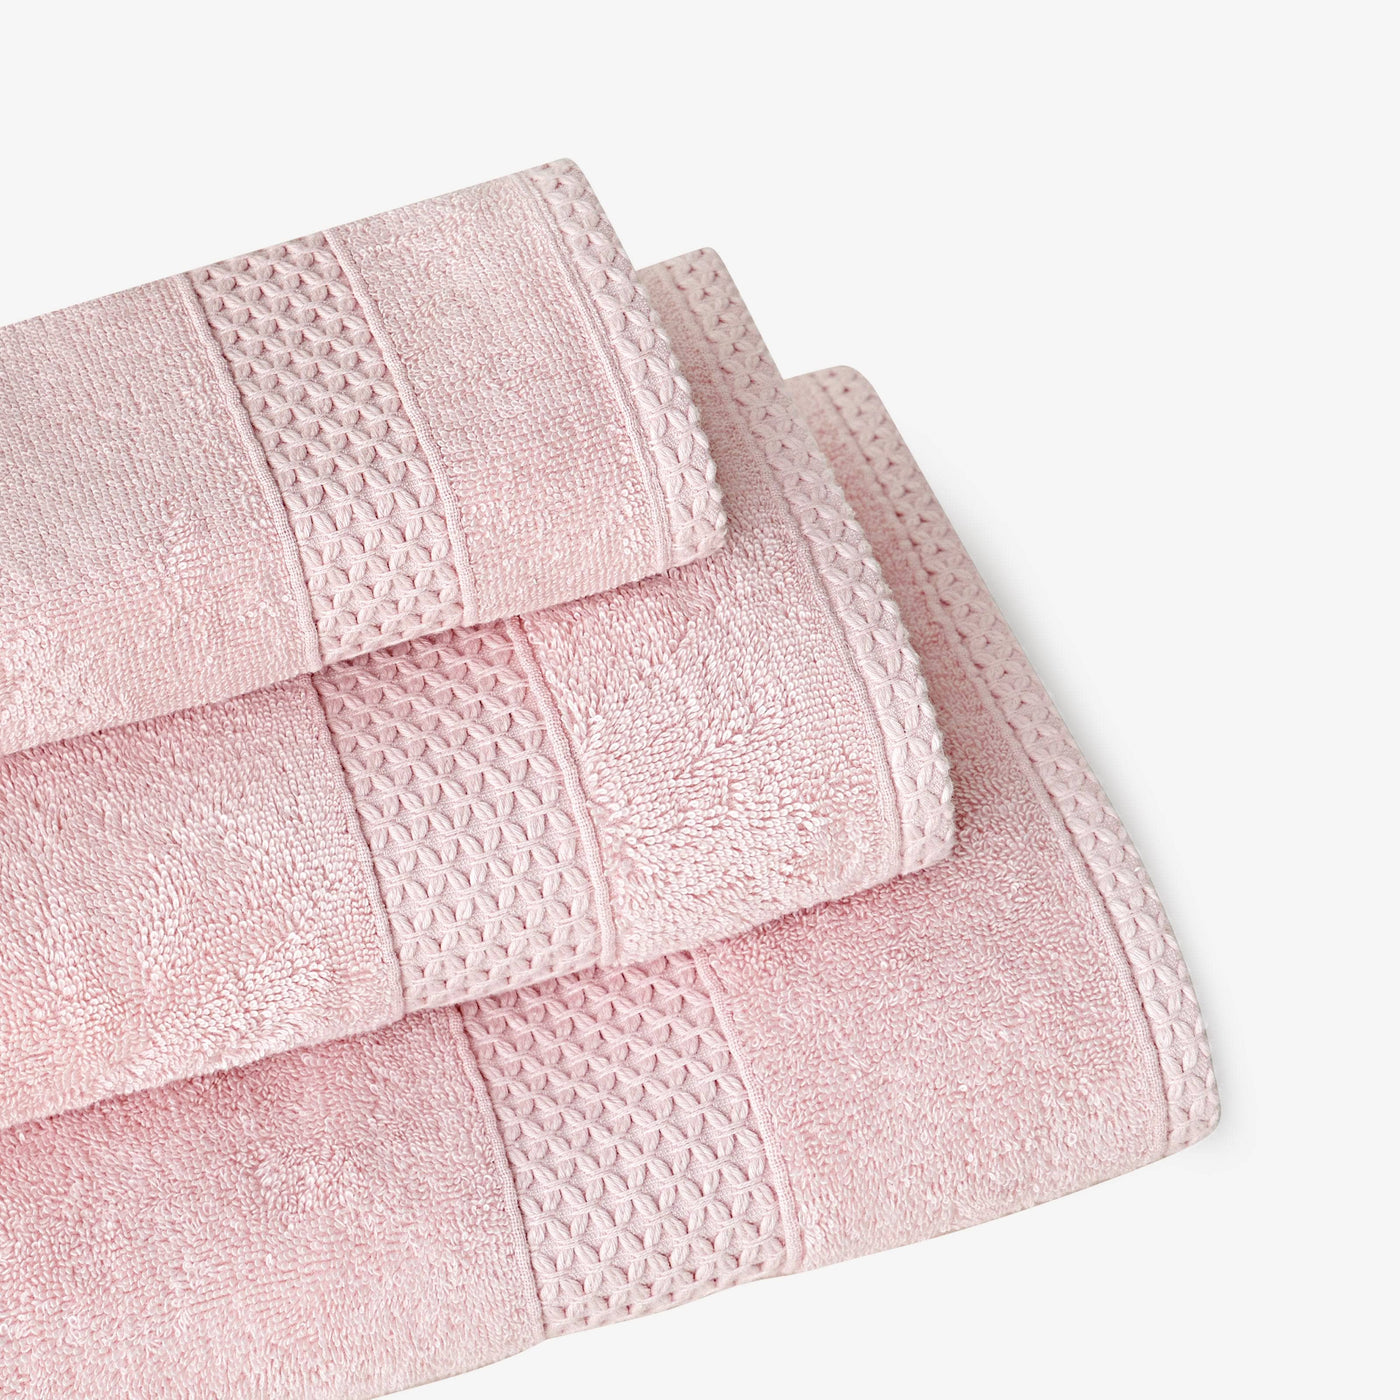 Aqua Fibro Set of 4 Extra Soft 100% Turkish Cotton Face Cloths, Pink Face Cloths sazy.com